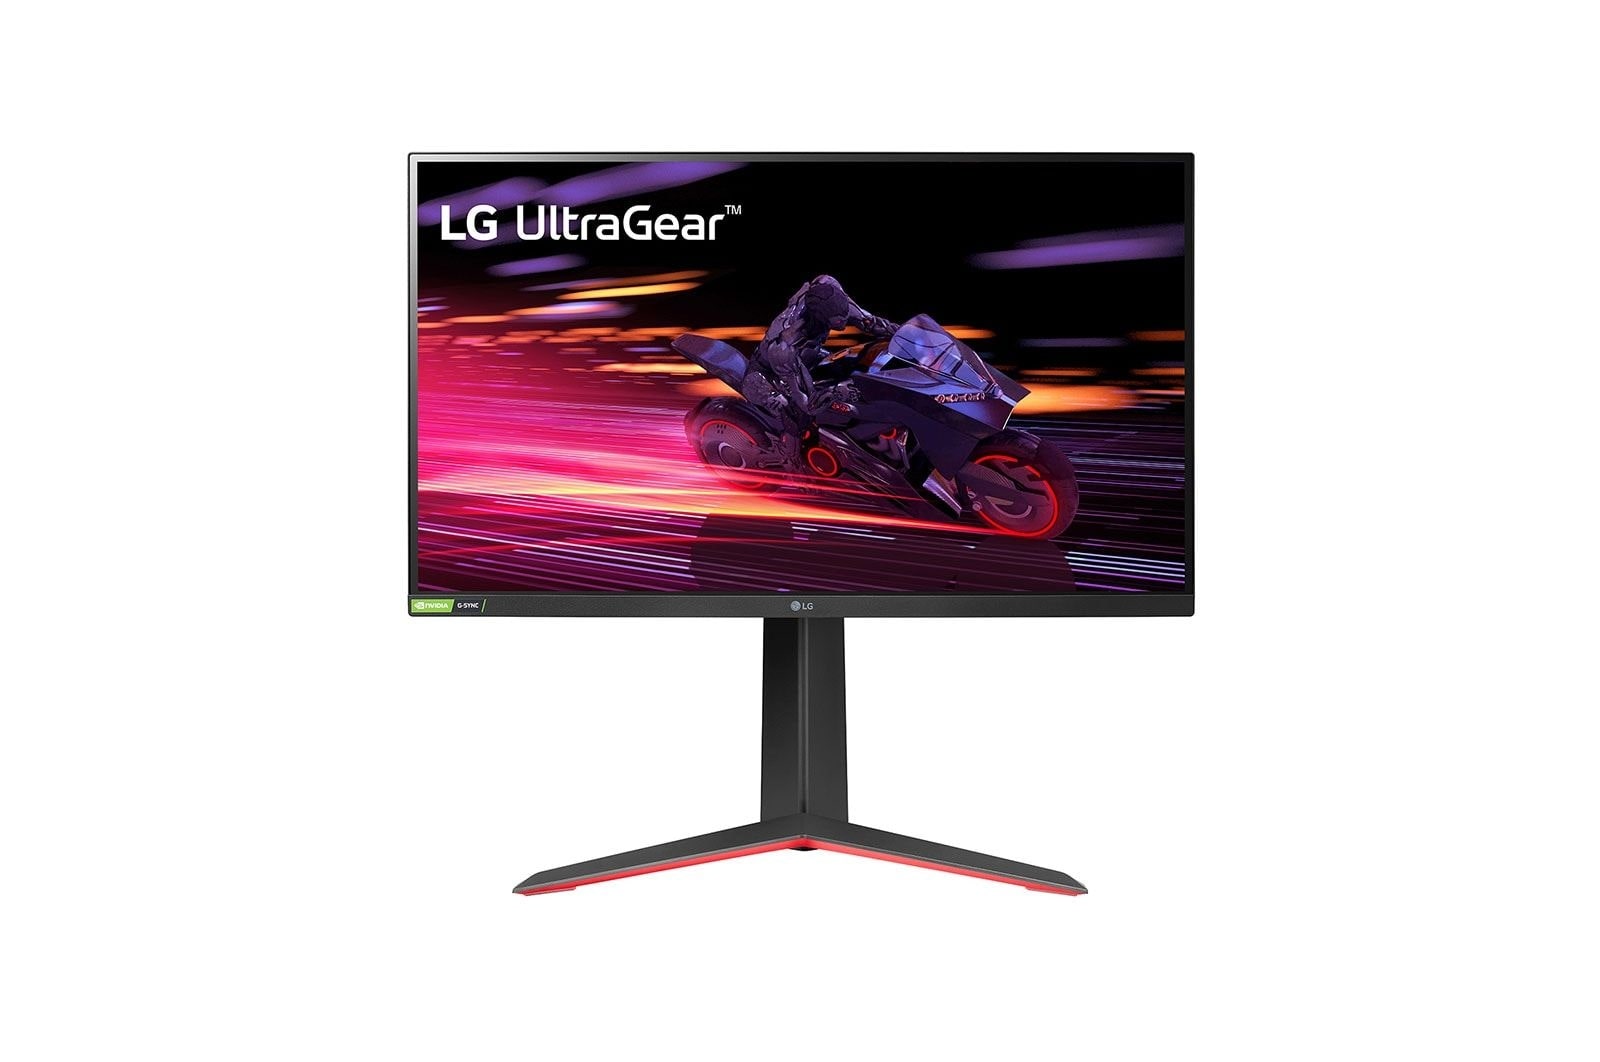 LG 27'' UltraGear™ IPS 1ms (GtG) игровой монитор NVIDIA® G-SYNC® Compatible, 27GP750-B